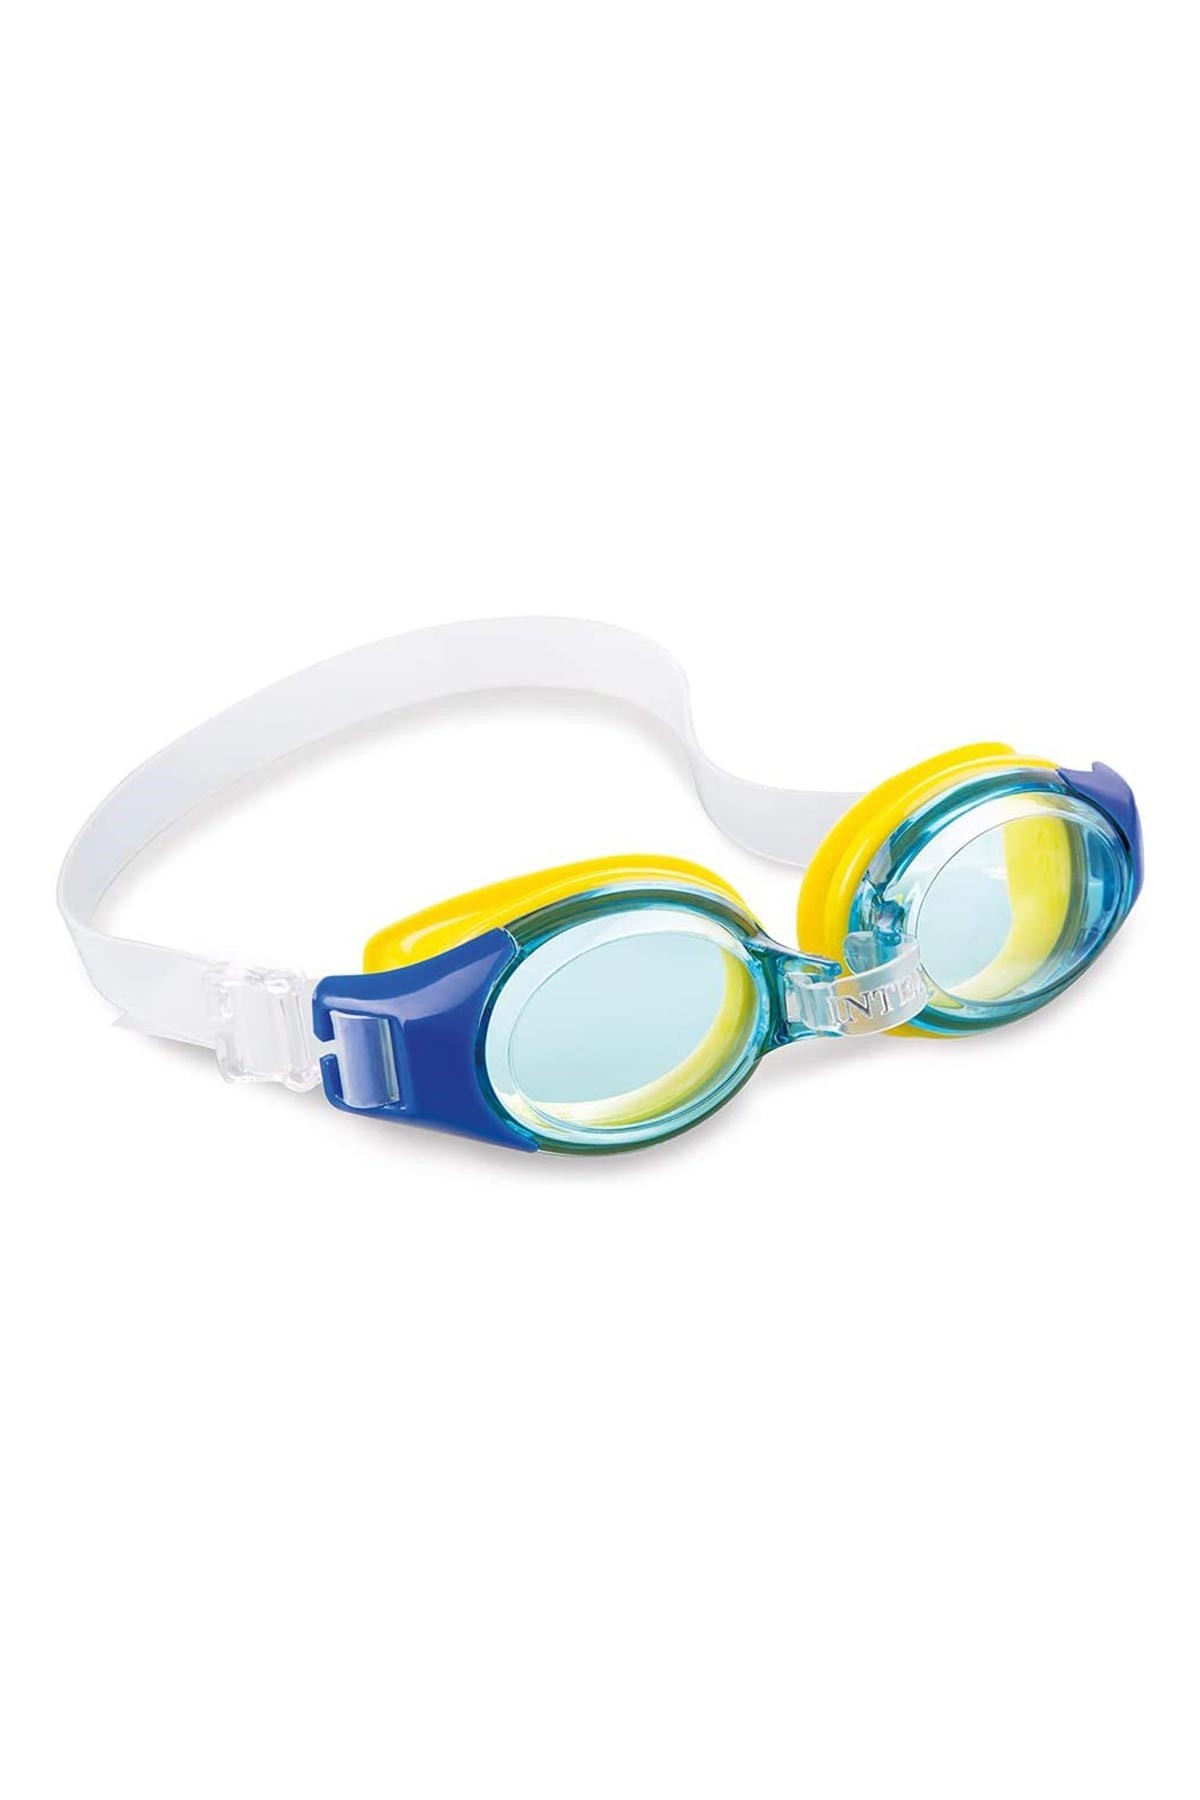 Intex Renkli Yüzücü Gözlüğü 3-8 Yaş